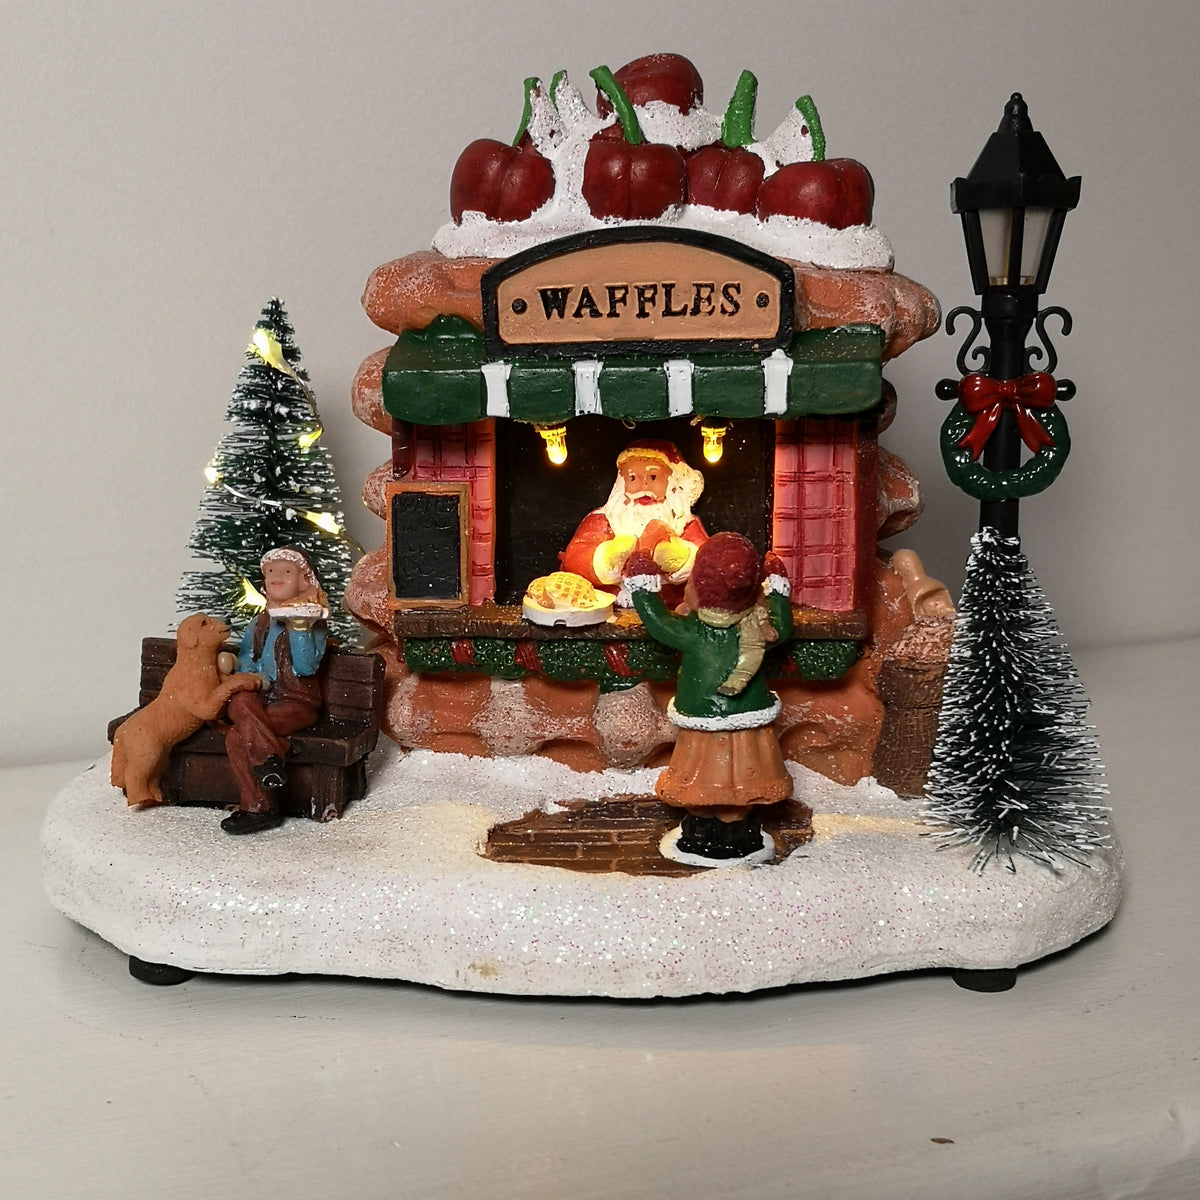 Festive Christmas 19cm Illuminated Waffle Shop Battery Operated